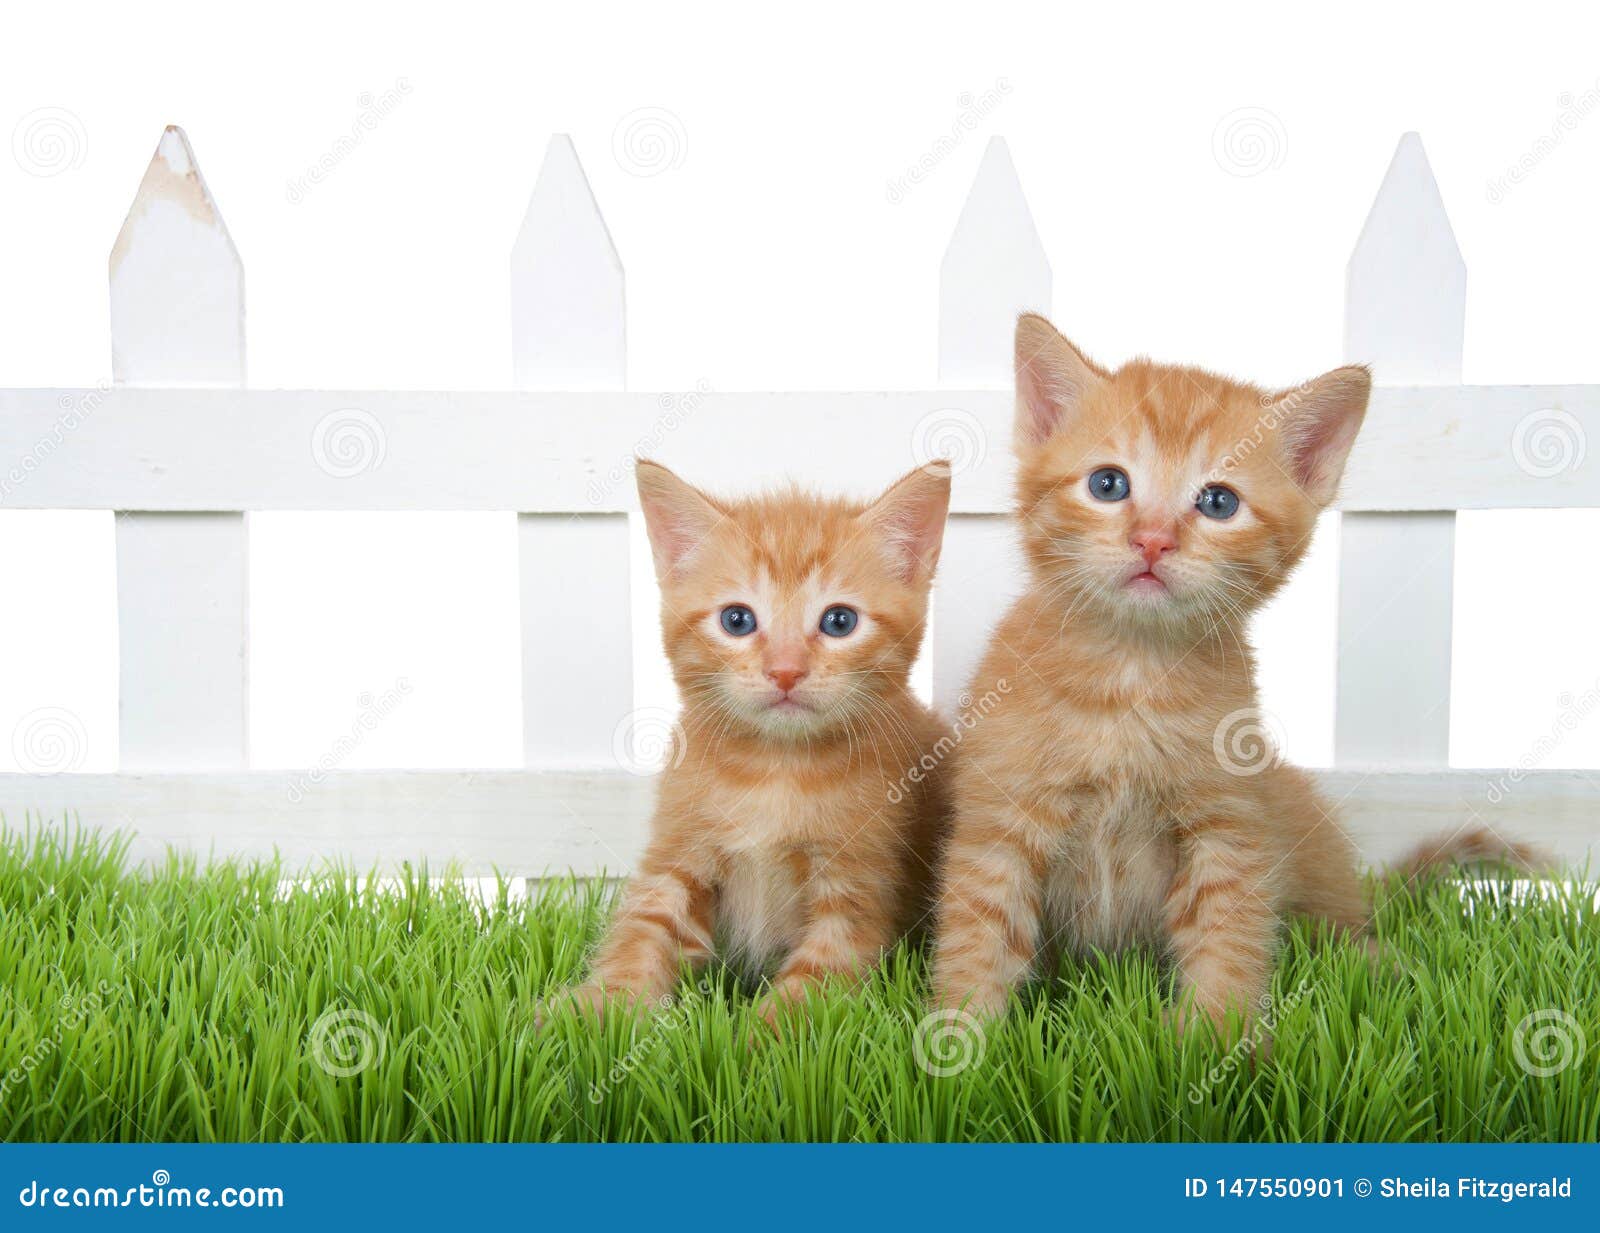 Nắm bắt cảm giác tươi mới ngập tràn với hai chú mèo cam đáng yêu ngồi trên cỏ xanh mơn mởn. Với bộ lông sáng bóng và khuôn mặt đáng yêu, chúng sẽ làm cho bạn cảm thấy đầy năng lượng và khích lệ.